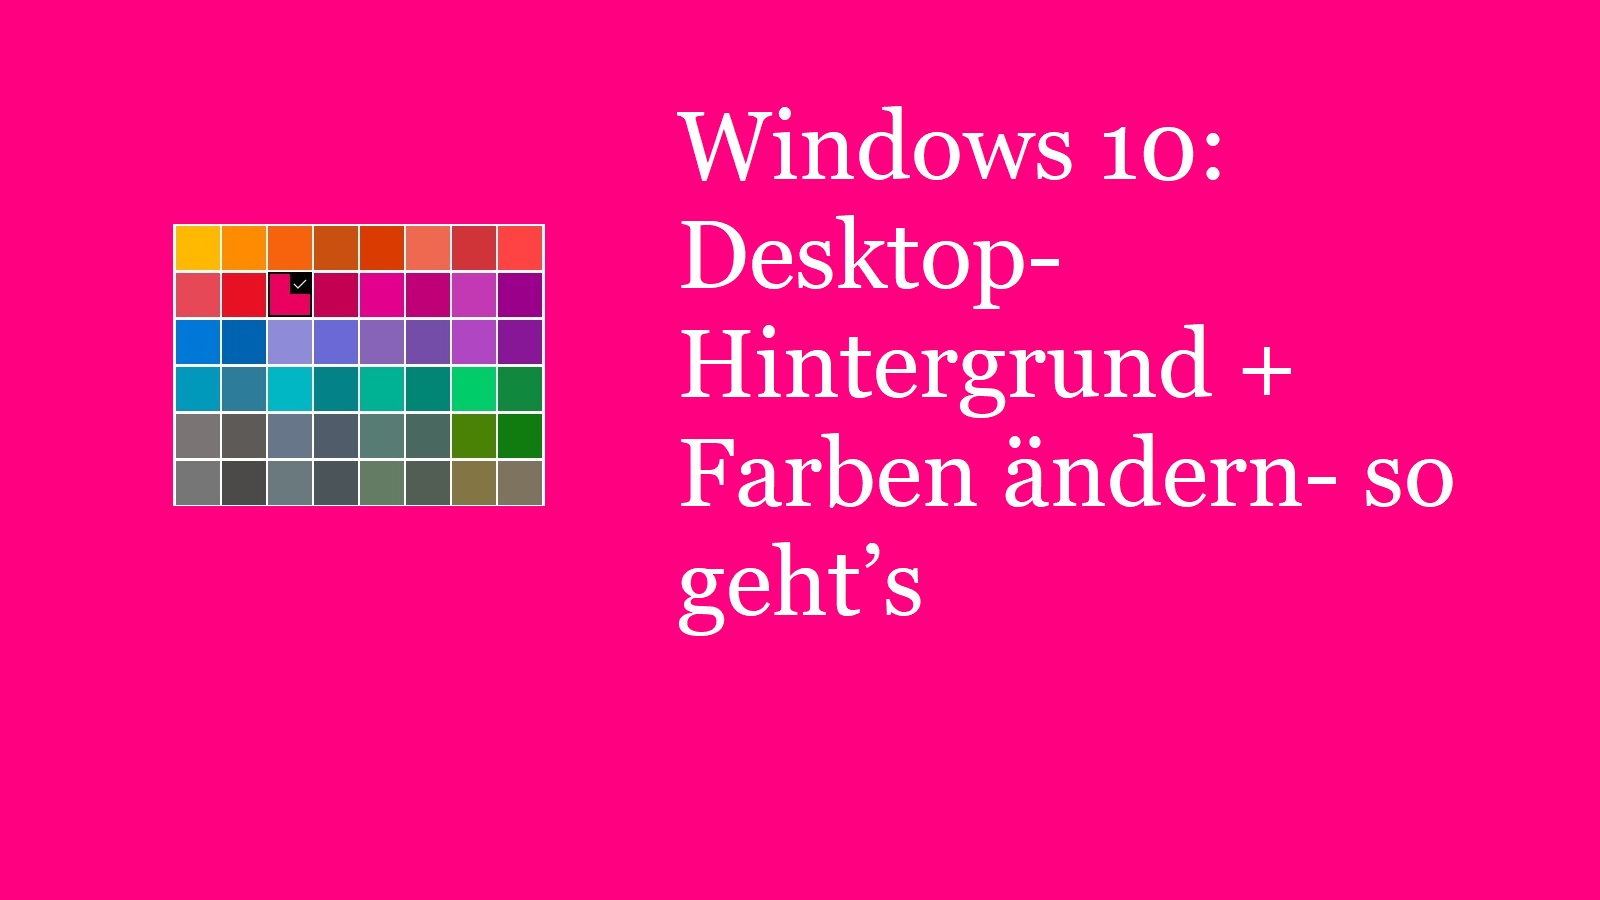 Windows 10: Desktop-Hintergrund + Farben ändern- so geht’s